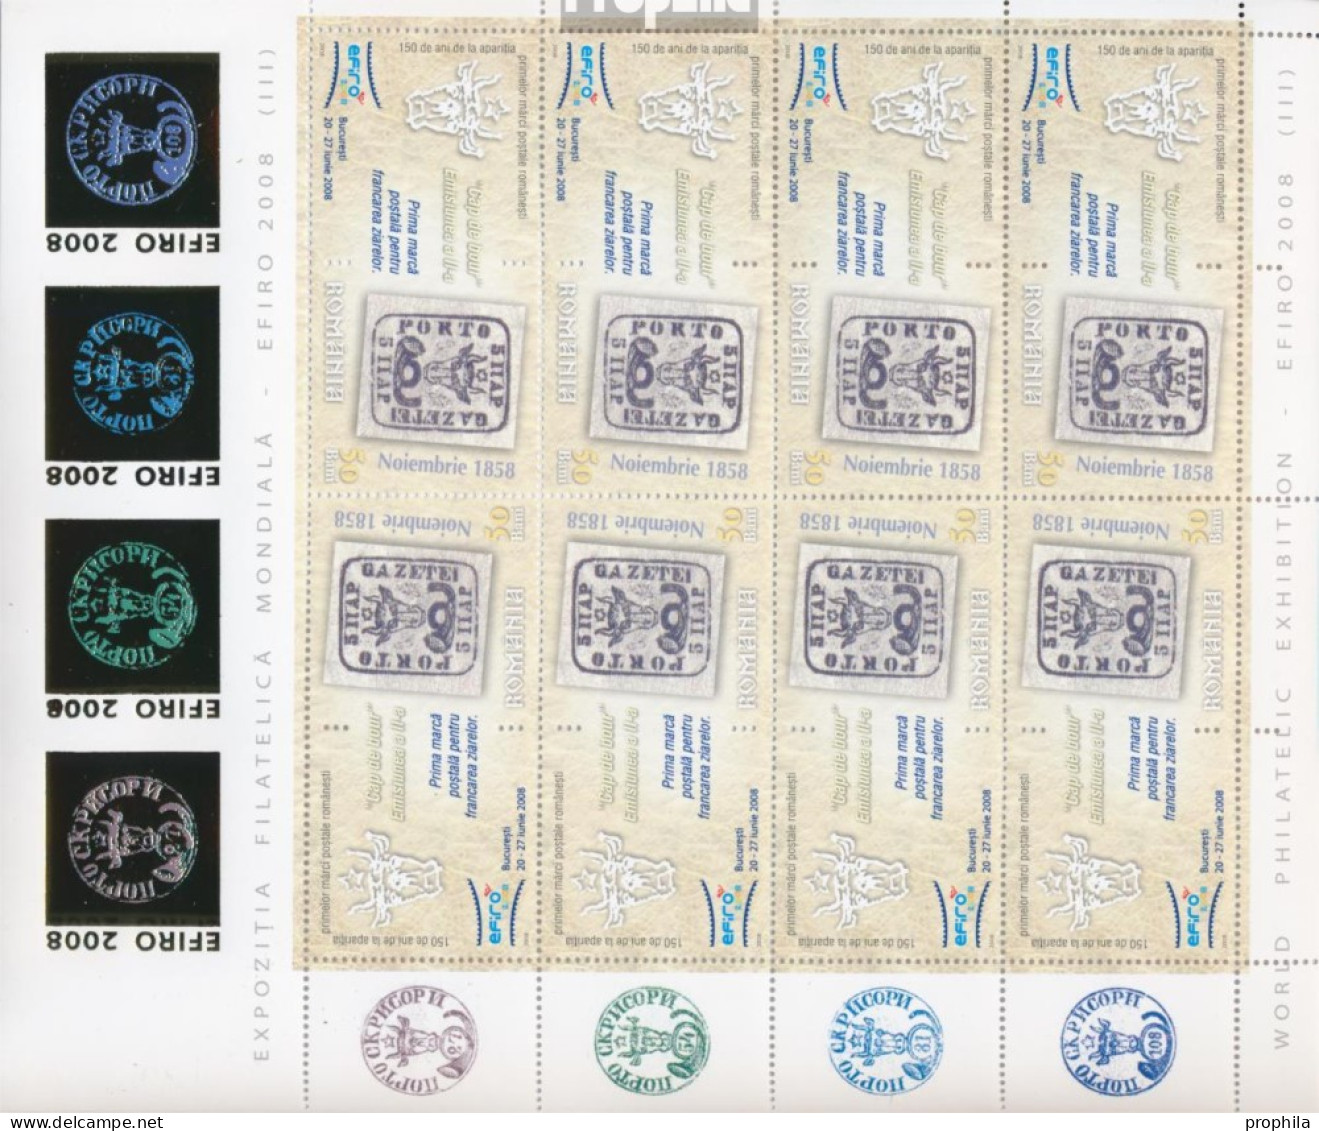 Rumänien 6299x Klb II-6304x Klb II Kleinbogen (kompl.Ausg.) Postfrisch 2008 BriefmarkenausstellungEFIRO 08 - Ongebruikt